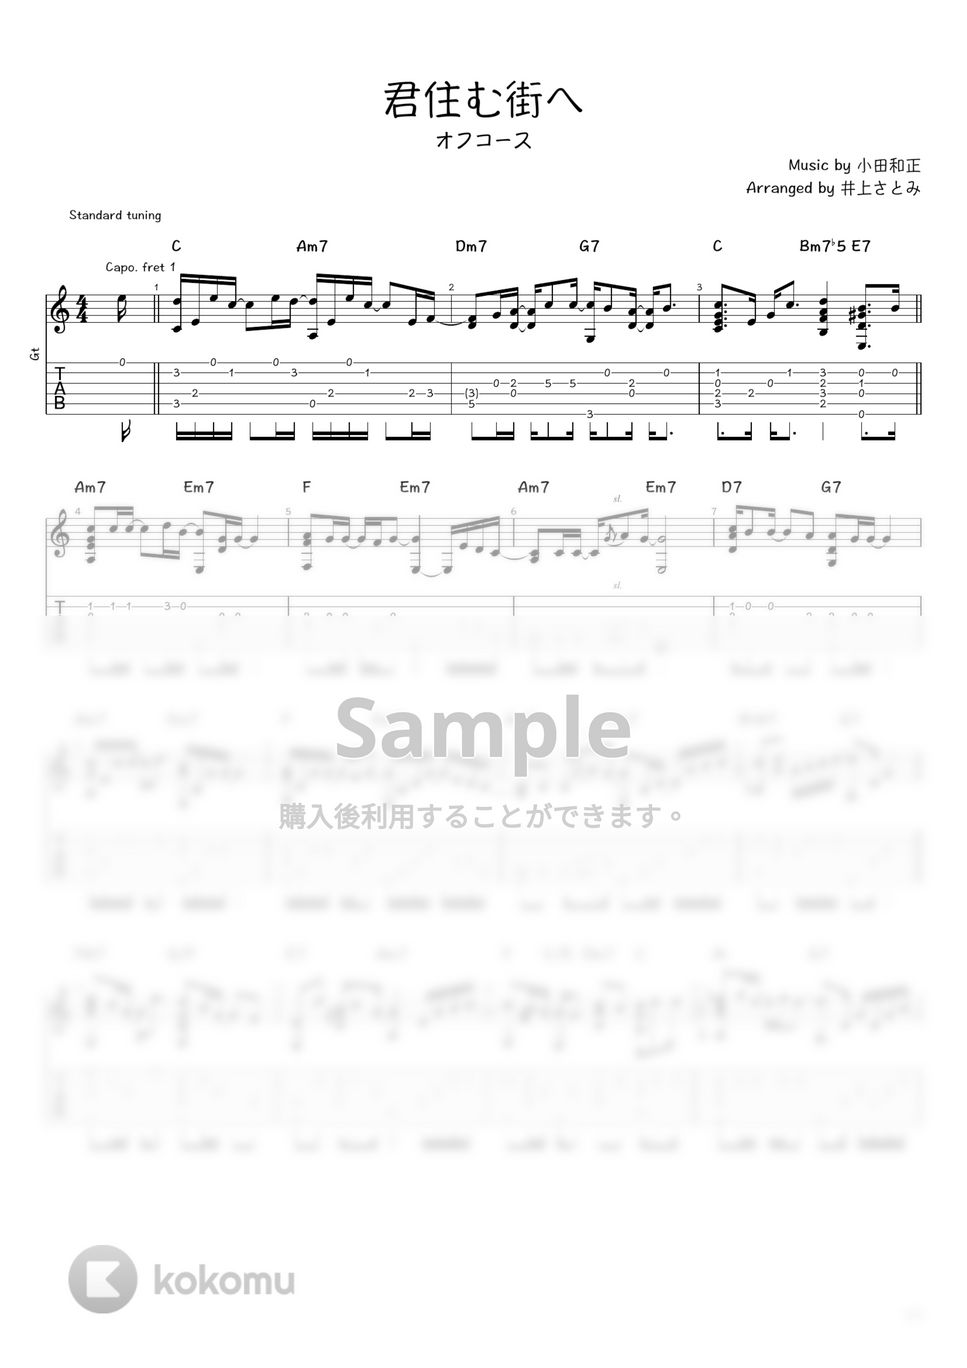 オフコース - 君住む街へ (ソロギター / タブ譜) by 井上さとみ